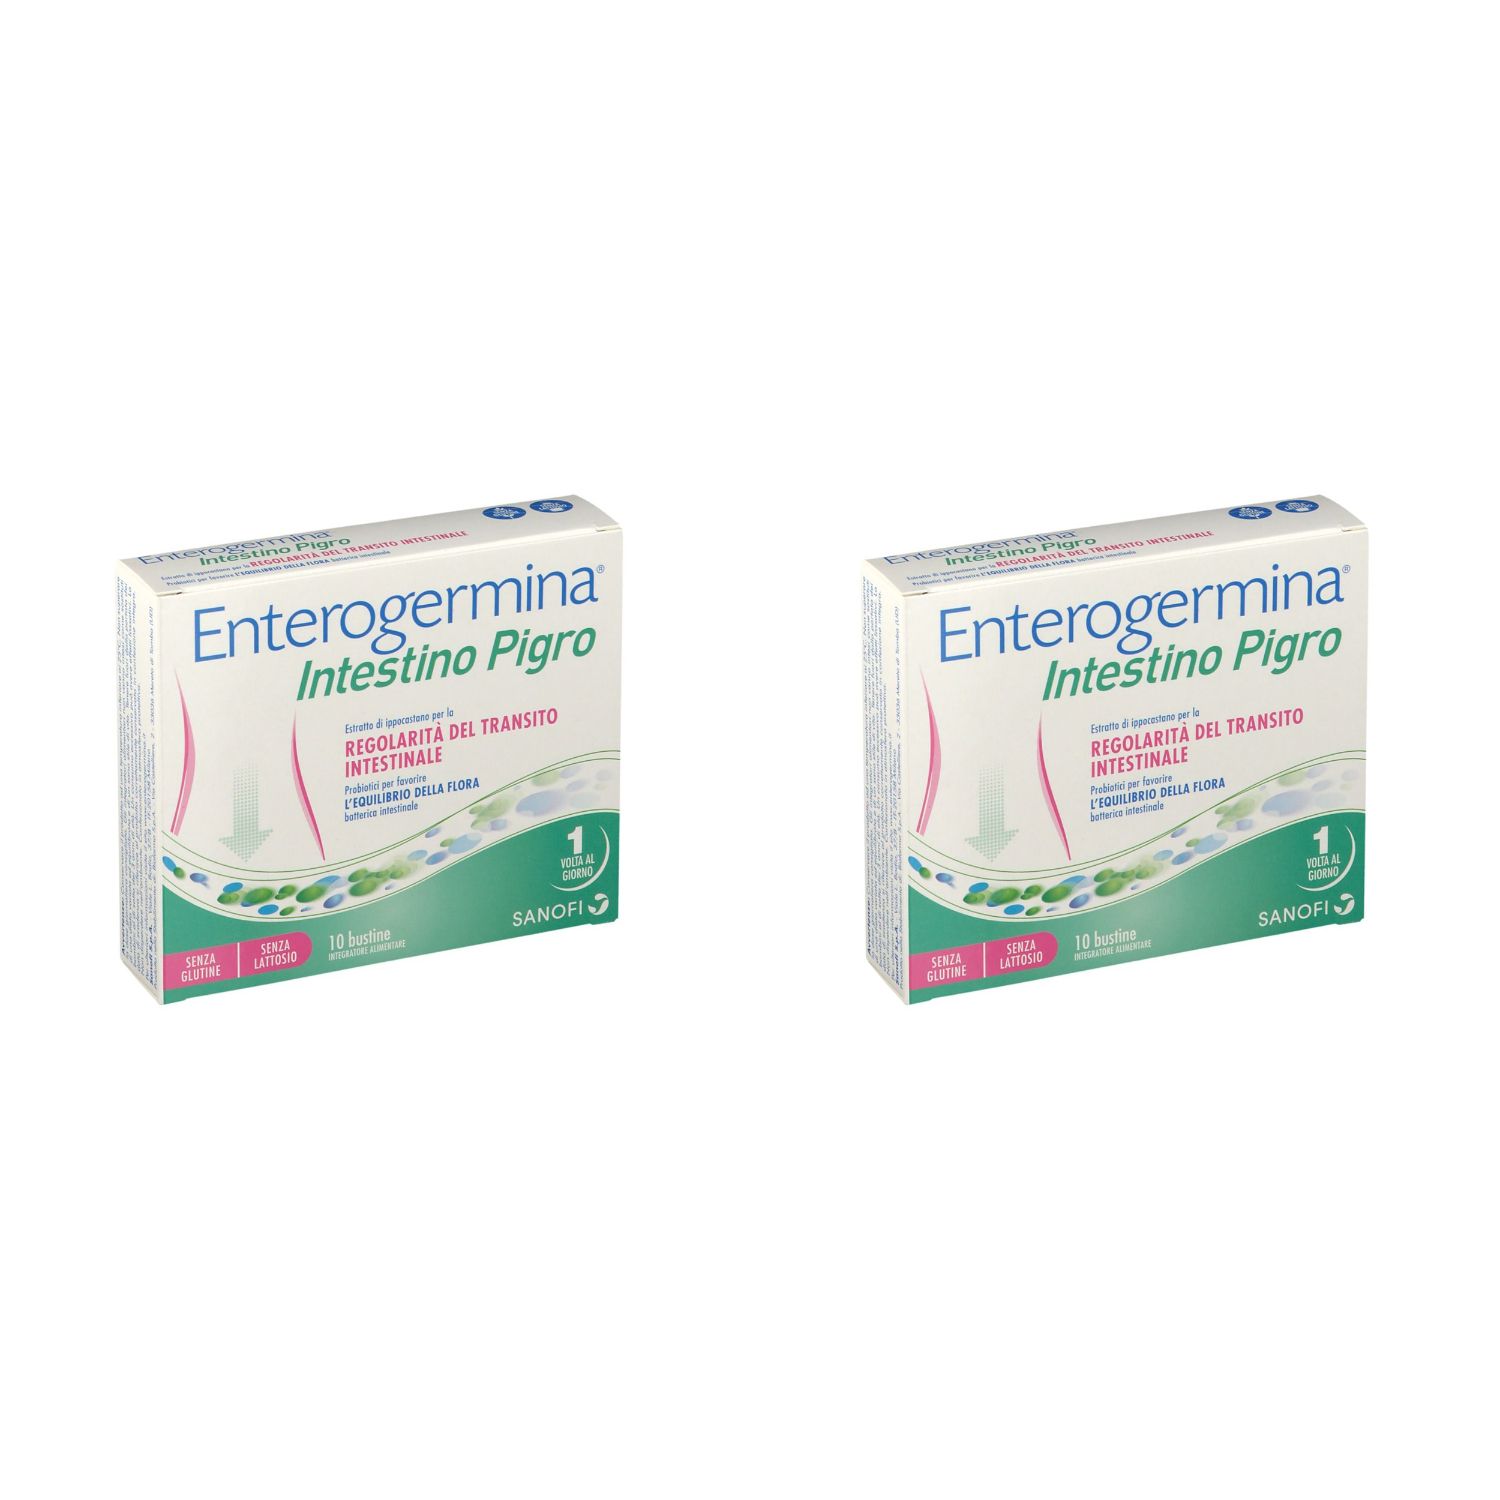 Enterogermina® Intestino Pigro